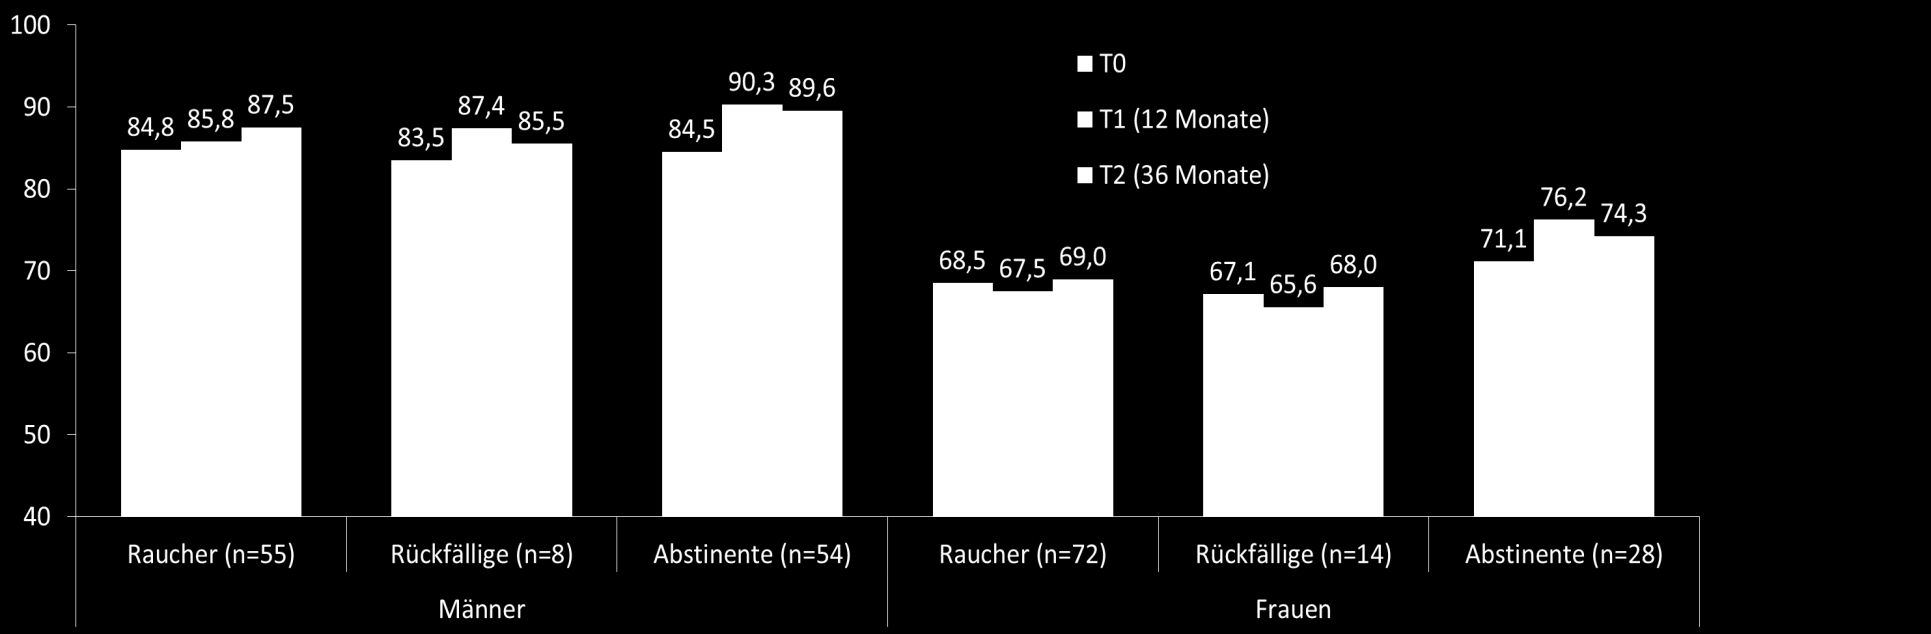 Ergebnisse 12 Monaten nach dem Rauchstopp: durchschnittliche Gewichtszunahme Abstinente (T1 u. T2) 4,7 kg versus Raucher/Rückfällige 0,8 kg; p<.